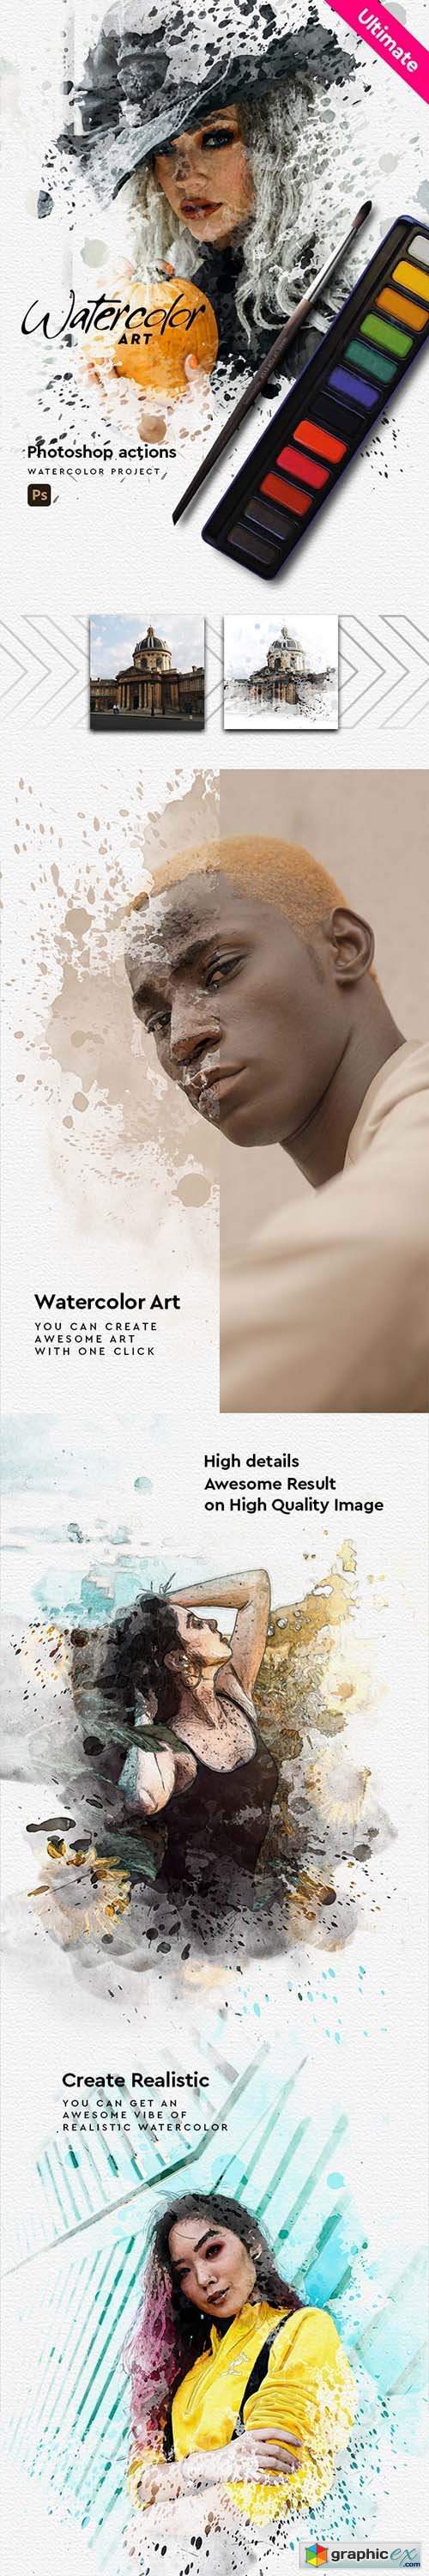 Watercolor Art - Aquarelle - Photoshop Action 